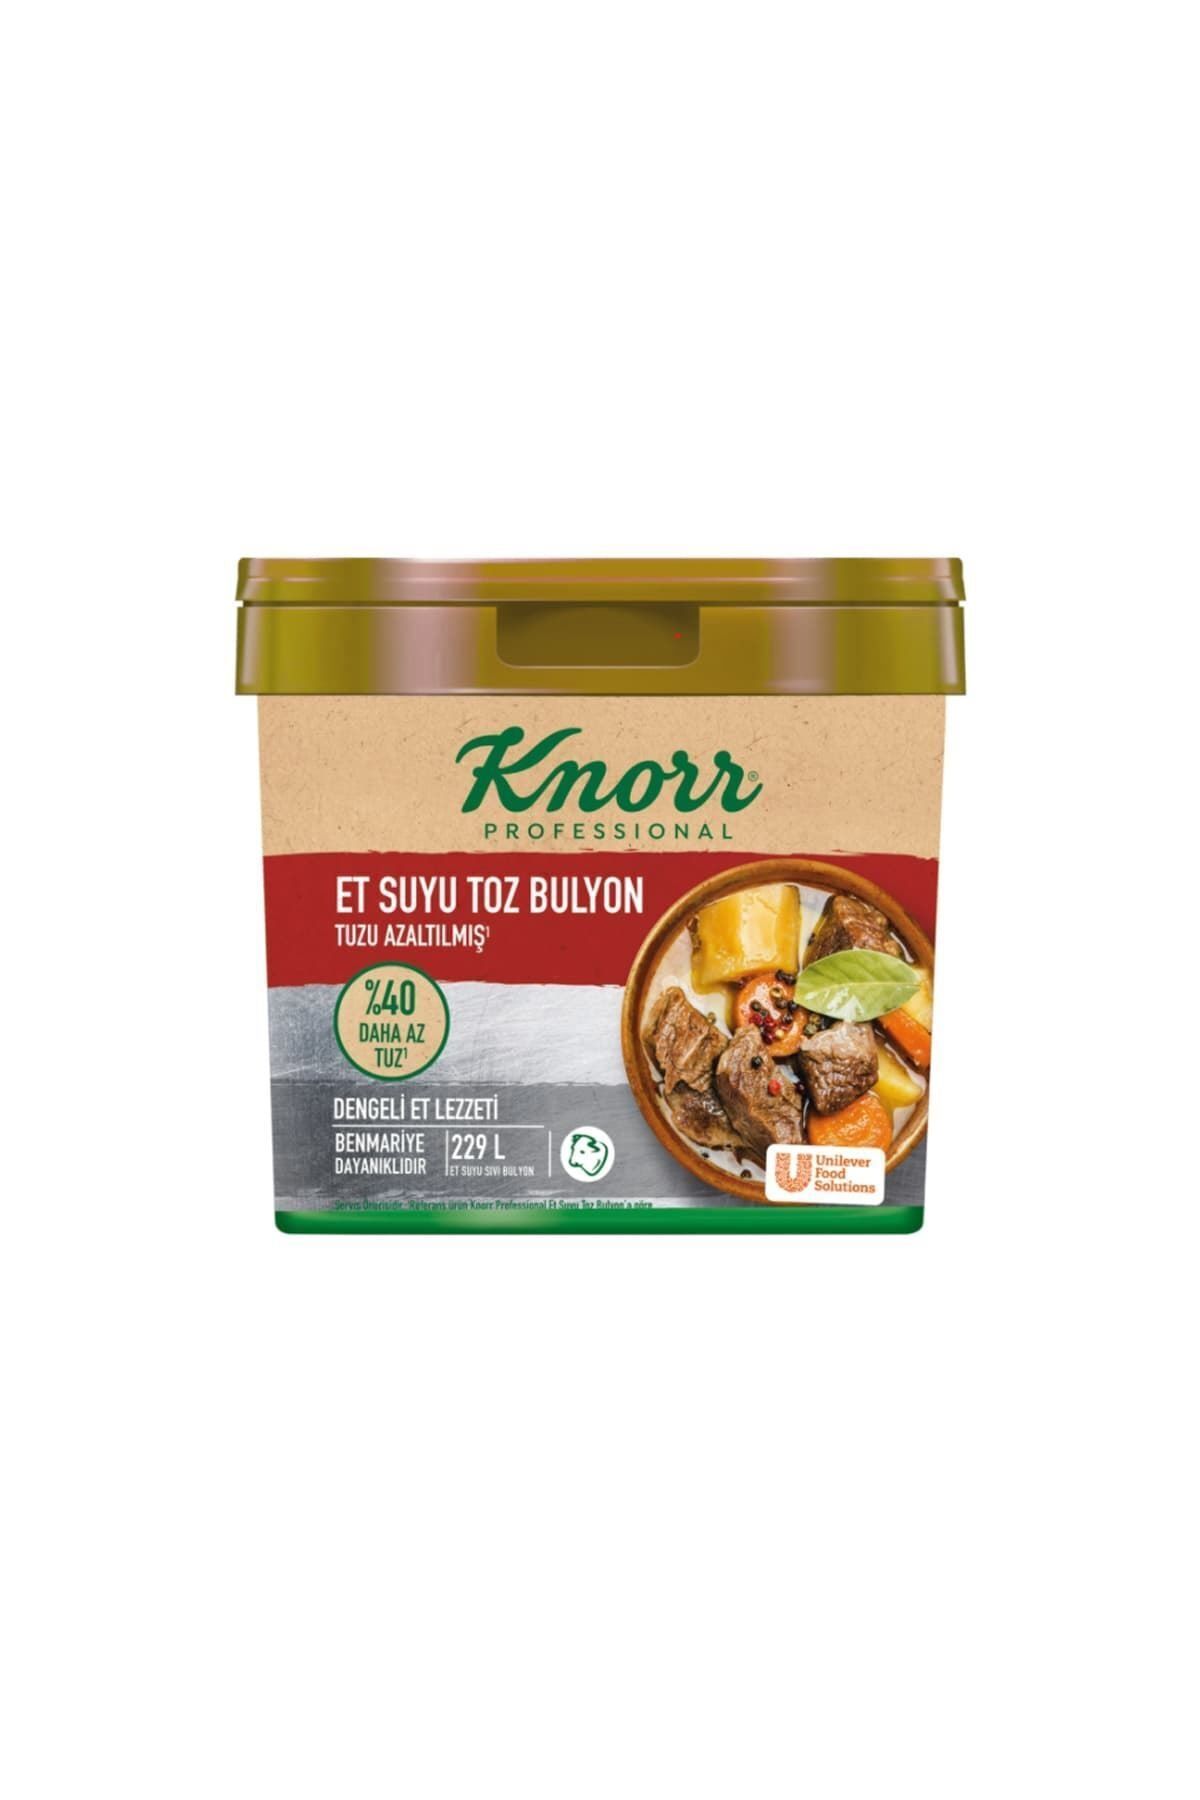 Knorr Tuzu Azaltılmıs Et Bulyon 4kg